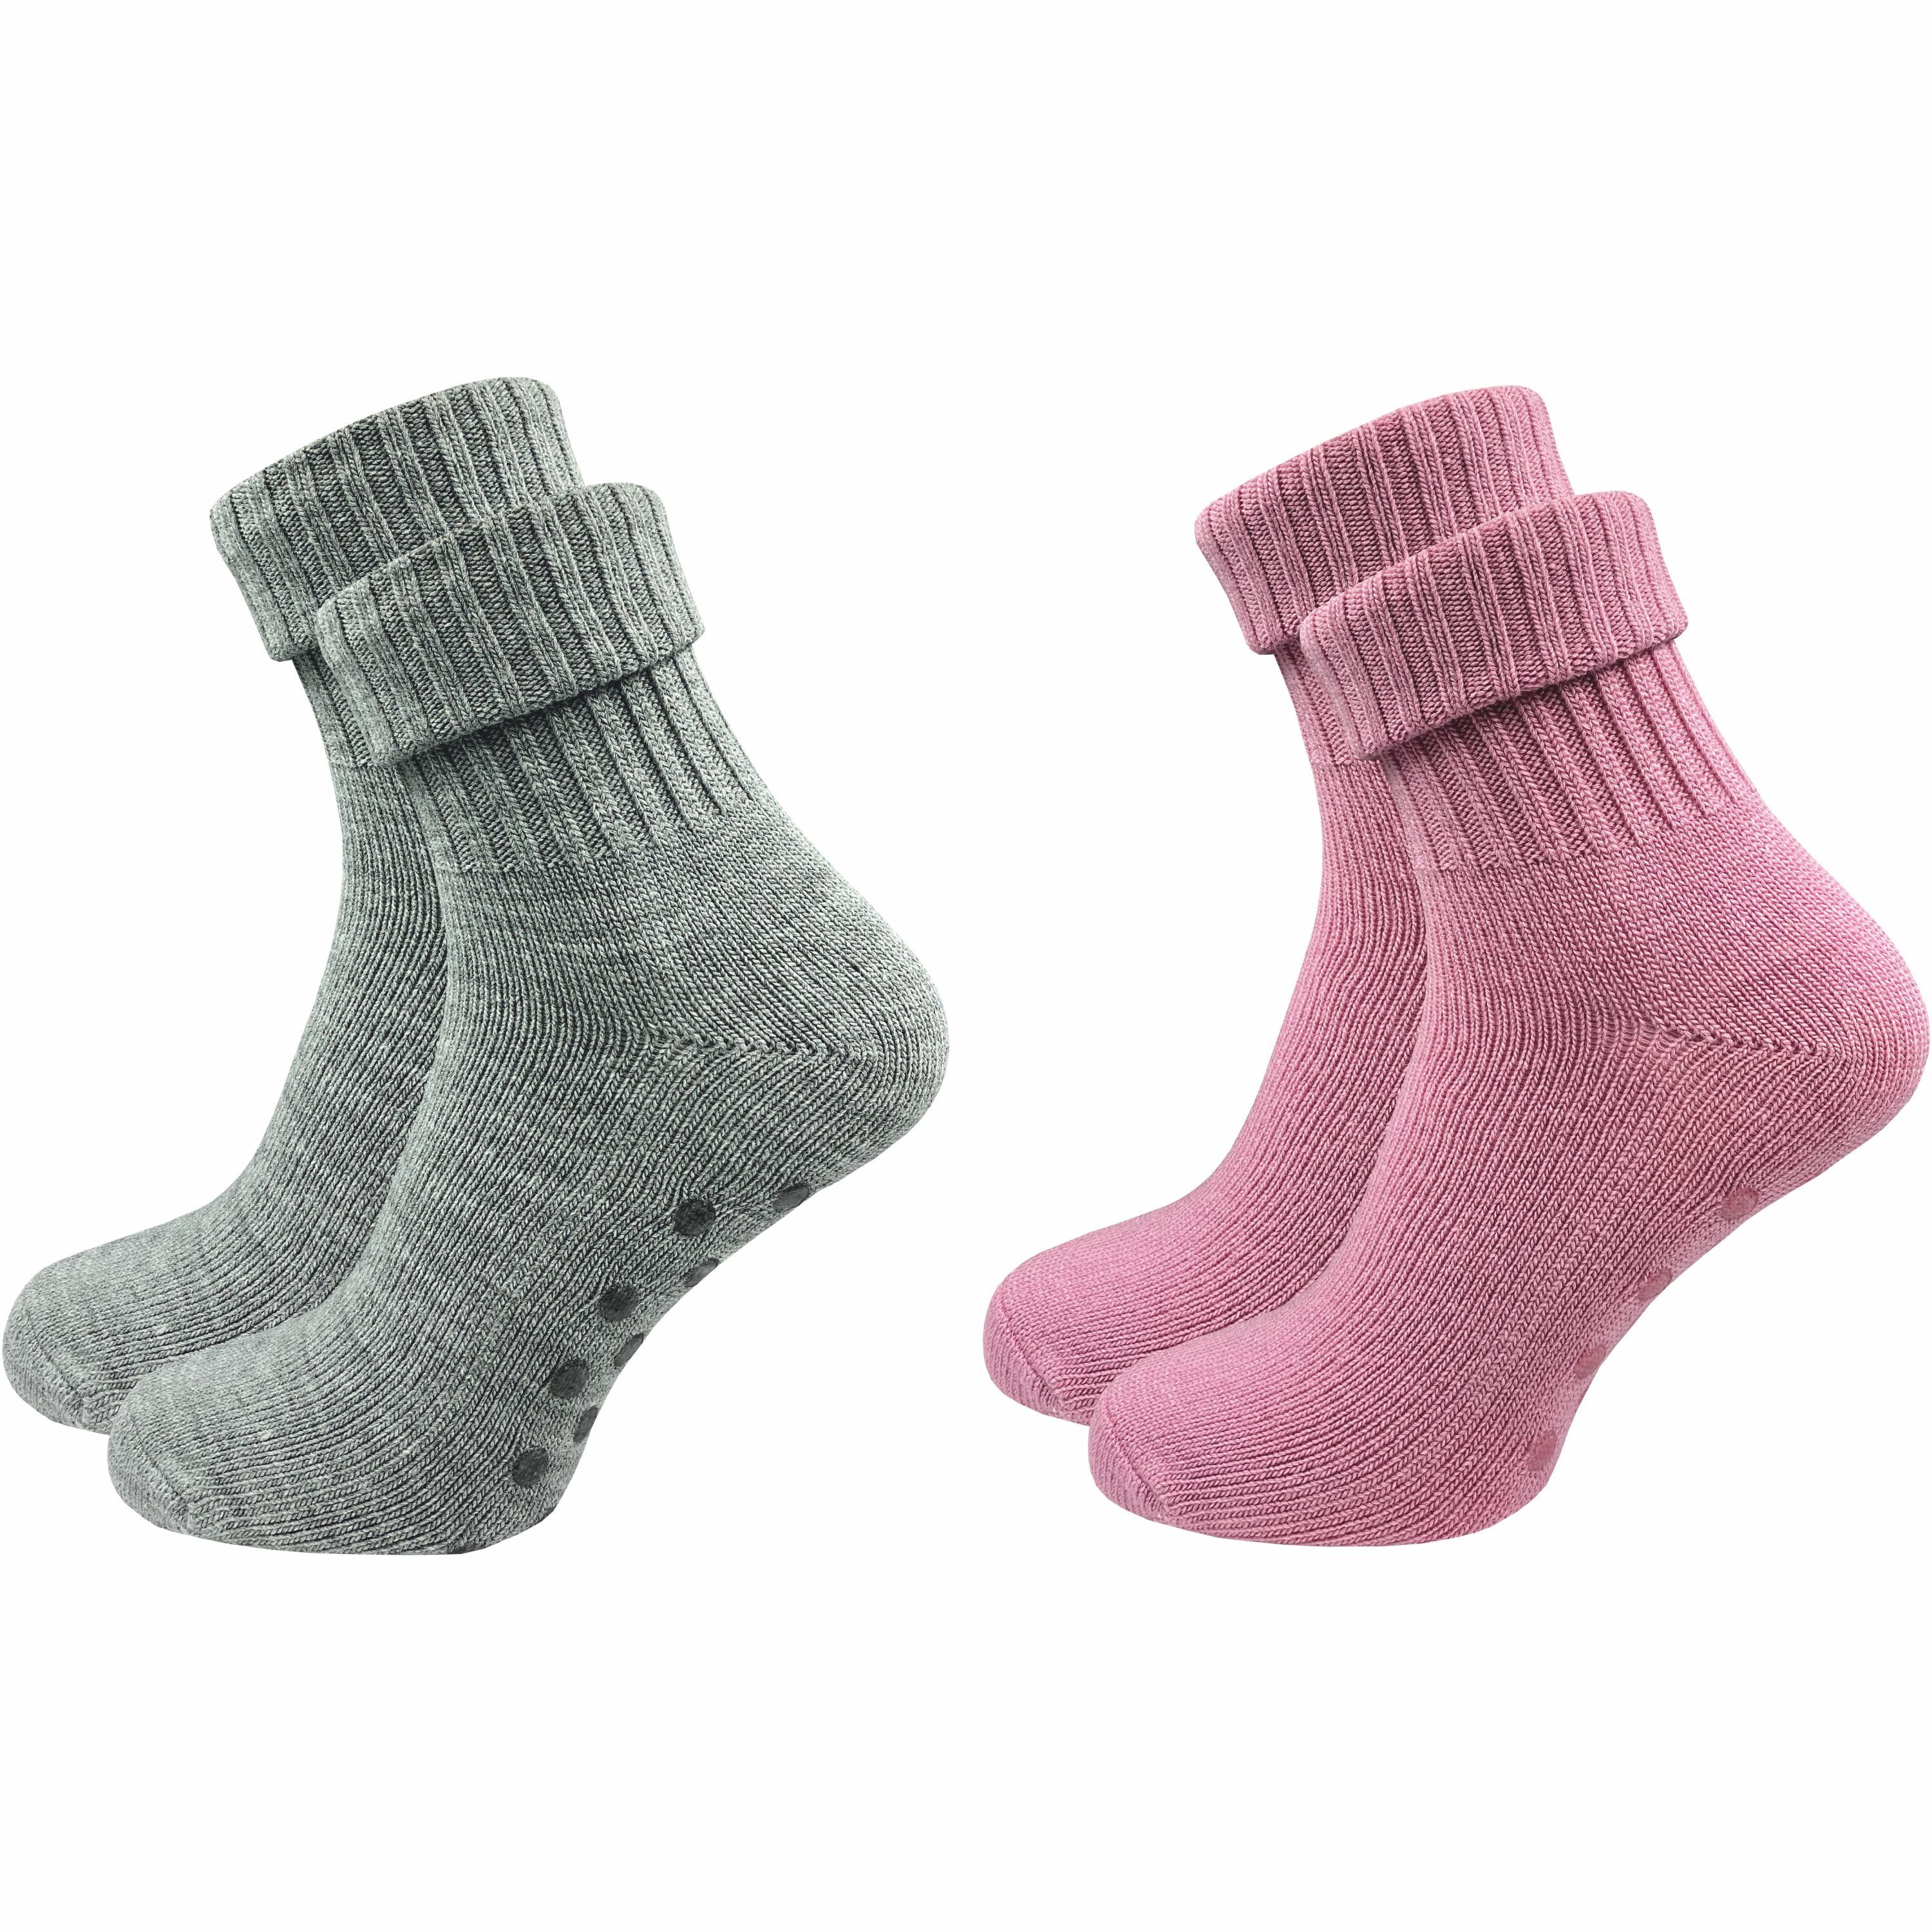 GAWILO ABS-Socken für Damen aus Wolle für extra warme Füße, Stoppersocken (2 Paar) Rutschfeste Hausschuhsocken, Weiche & kuschlige Socken mit Noppen rosa & hellgrau